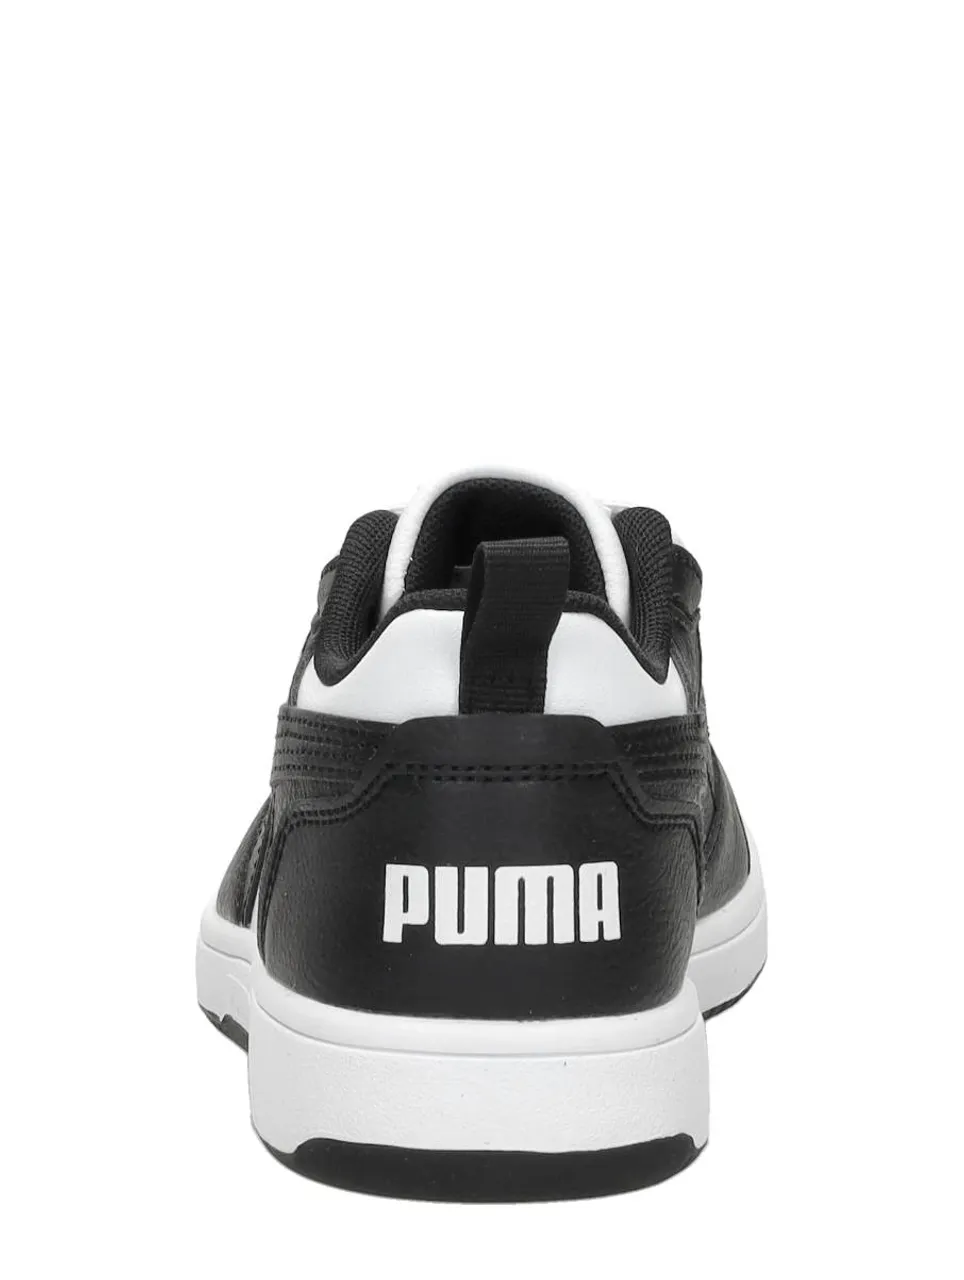 Puma - Rebound V6 Lo Ac Ps